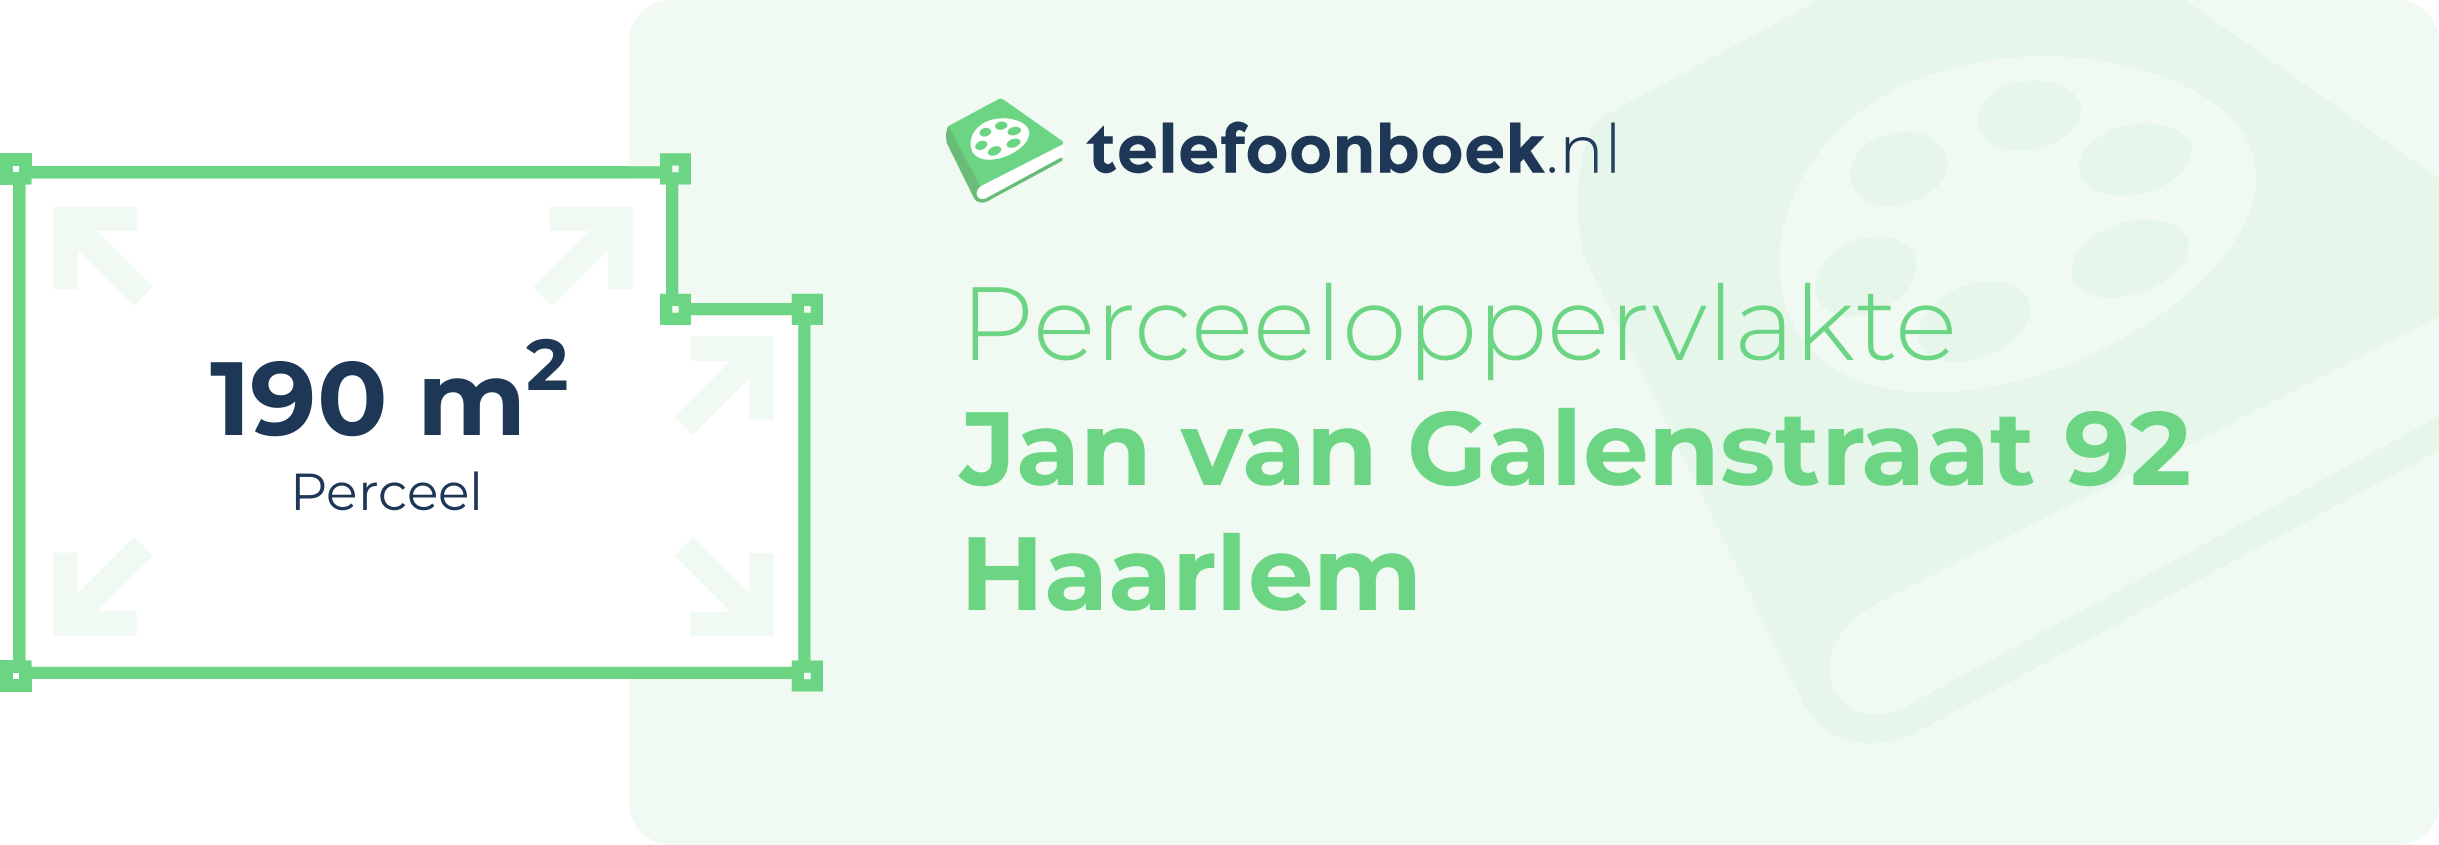 Perceeloppervlakte Jan Van Galenstraat 92 Haarlem